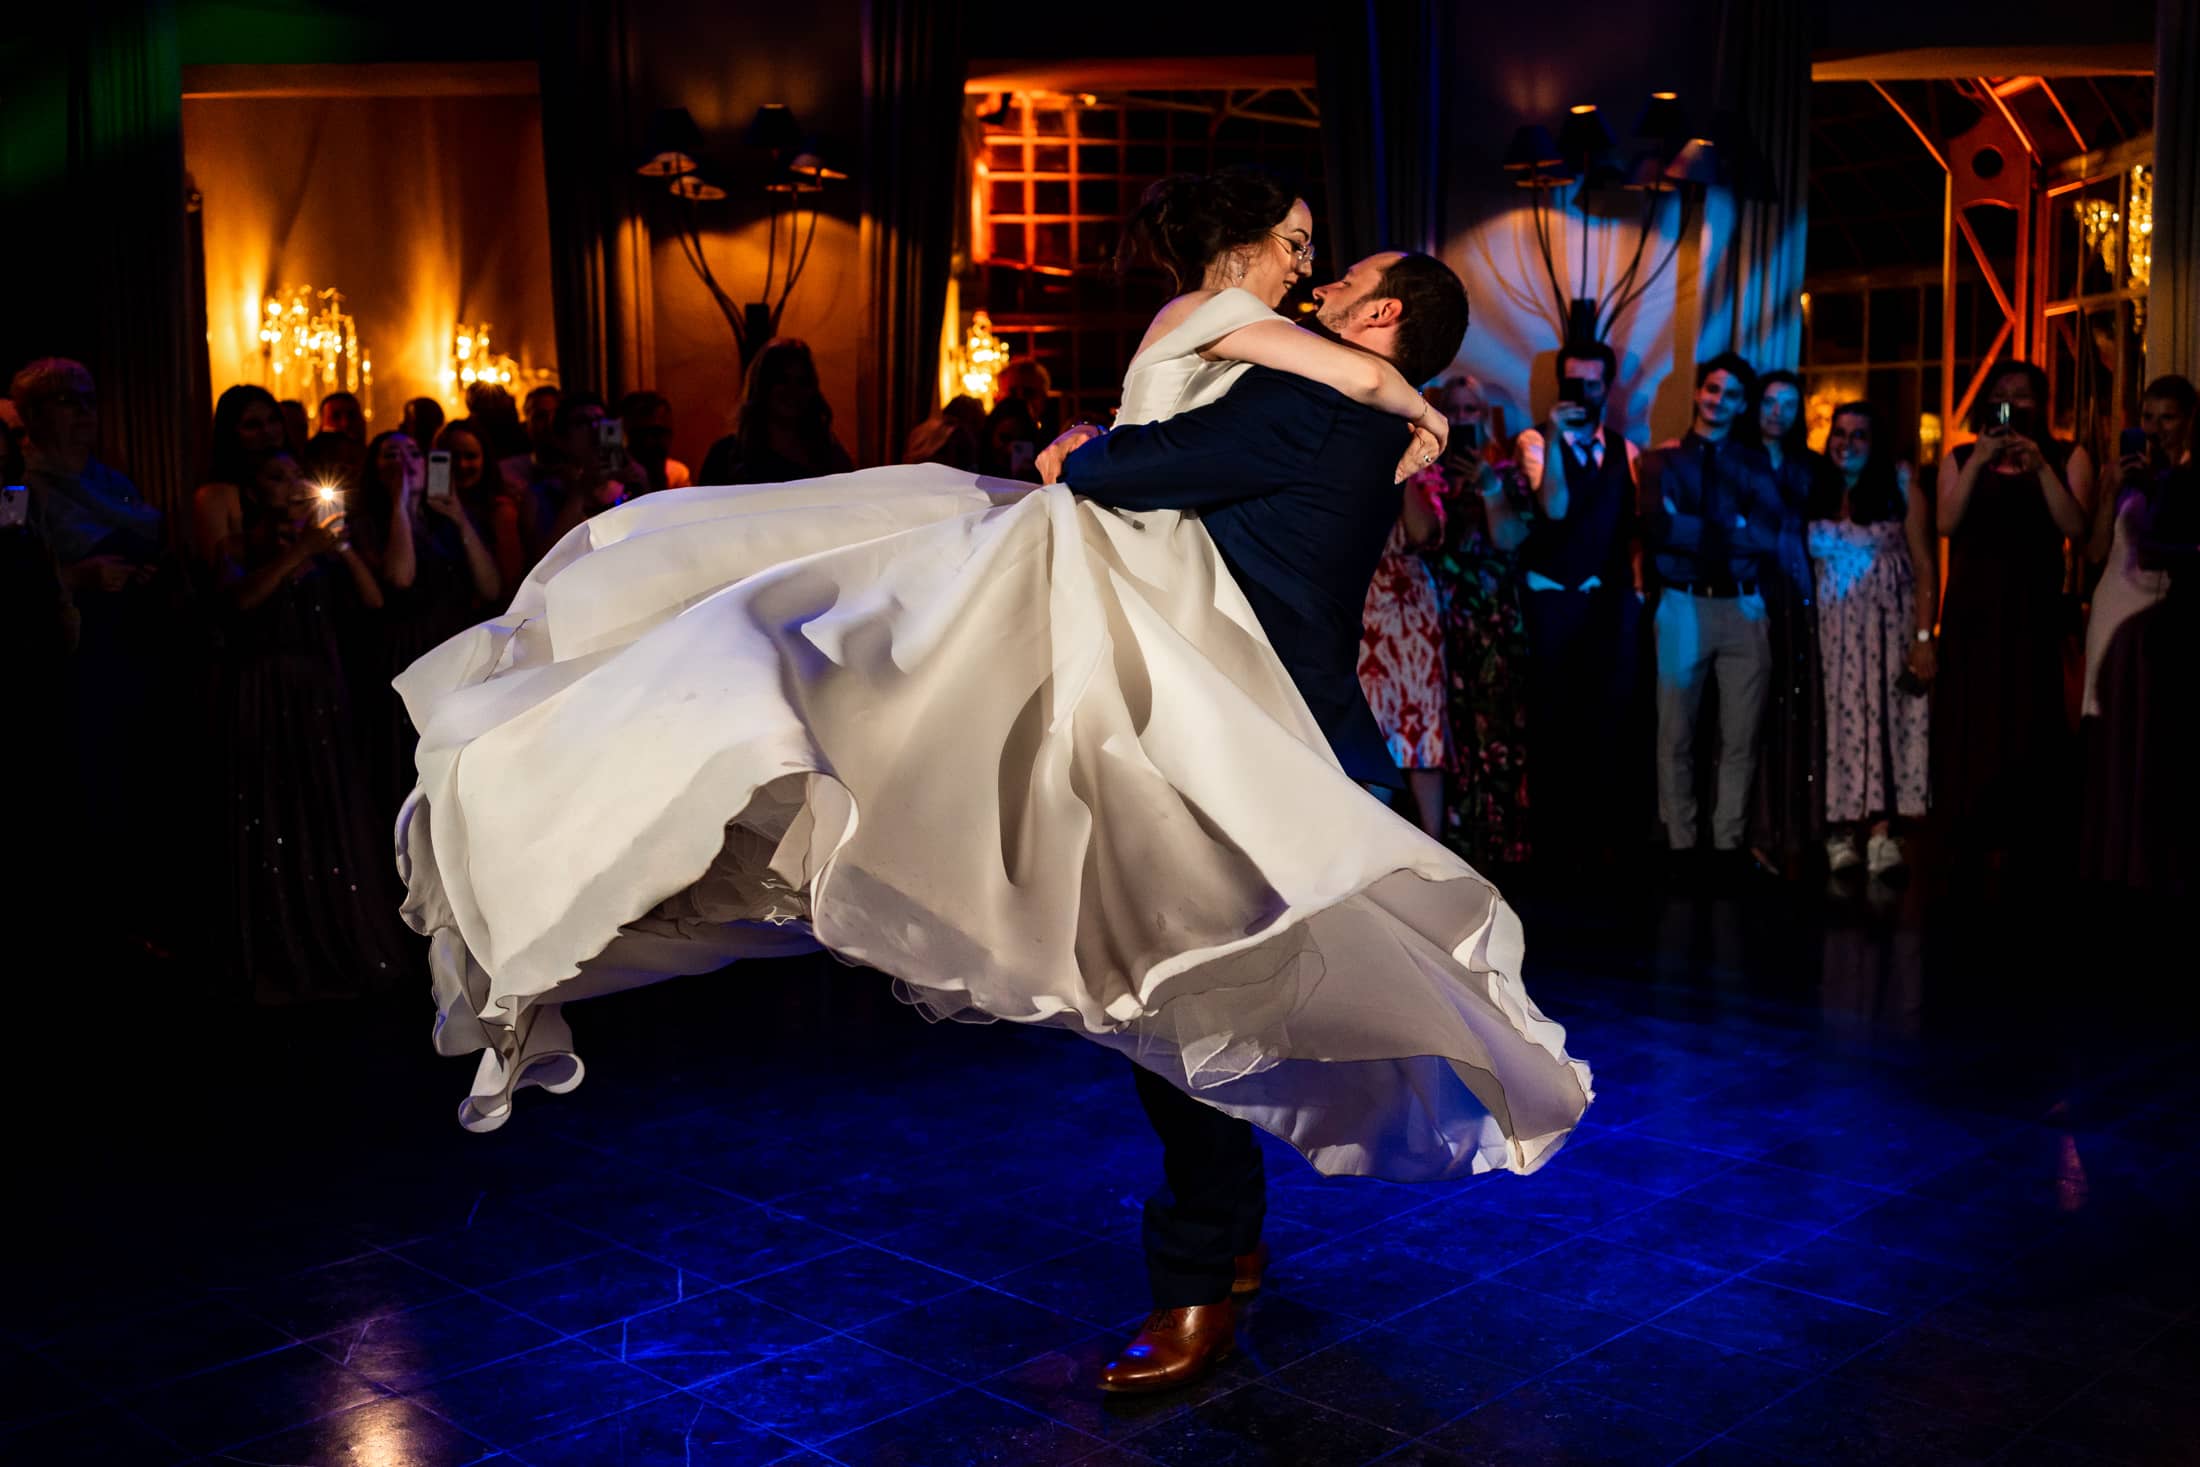 Dans la château de Ruisbroek les mariés ouvrent le bal dans un belle lumière d'ambiance